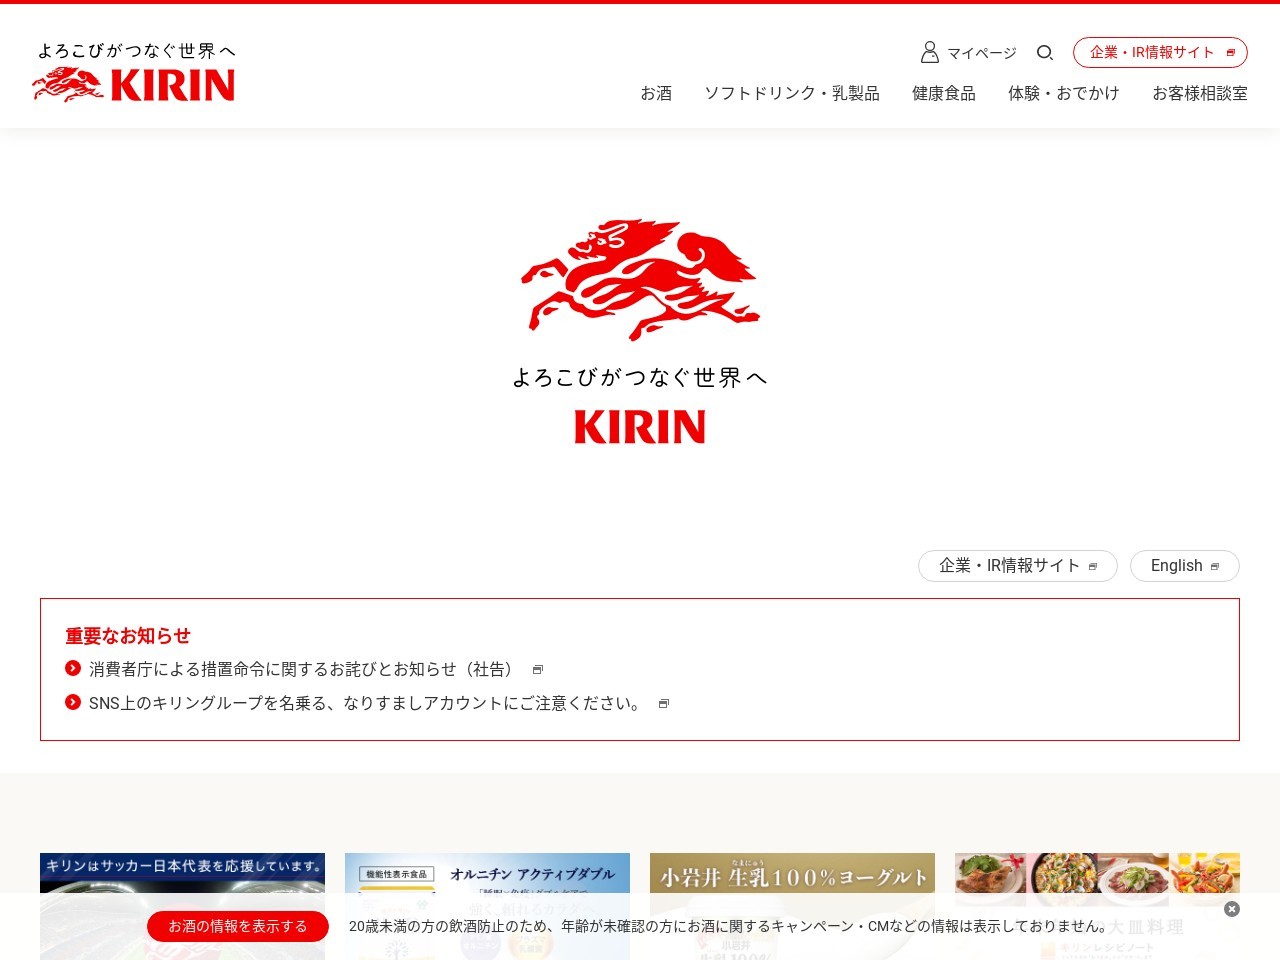 キリンビール 滋賀工場のクチコミ・評判とホームページ